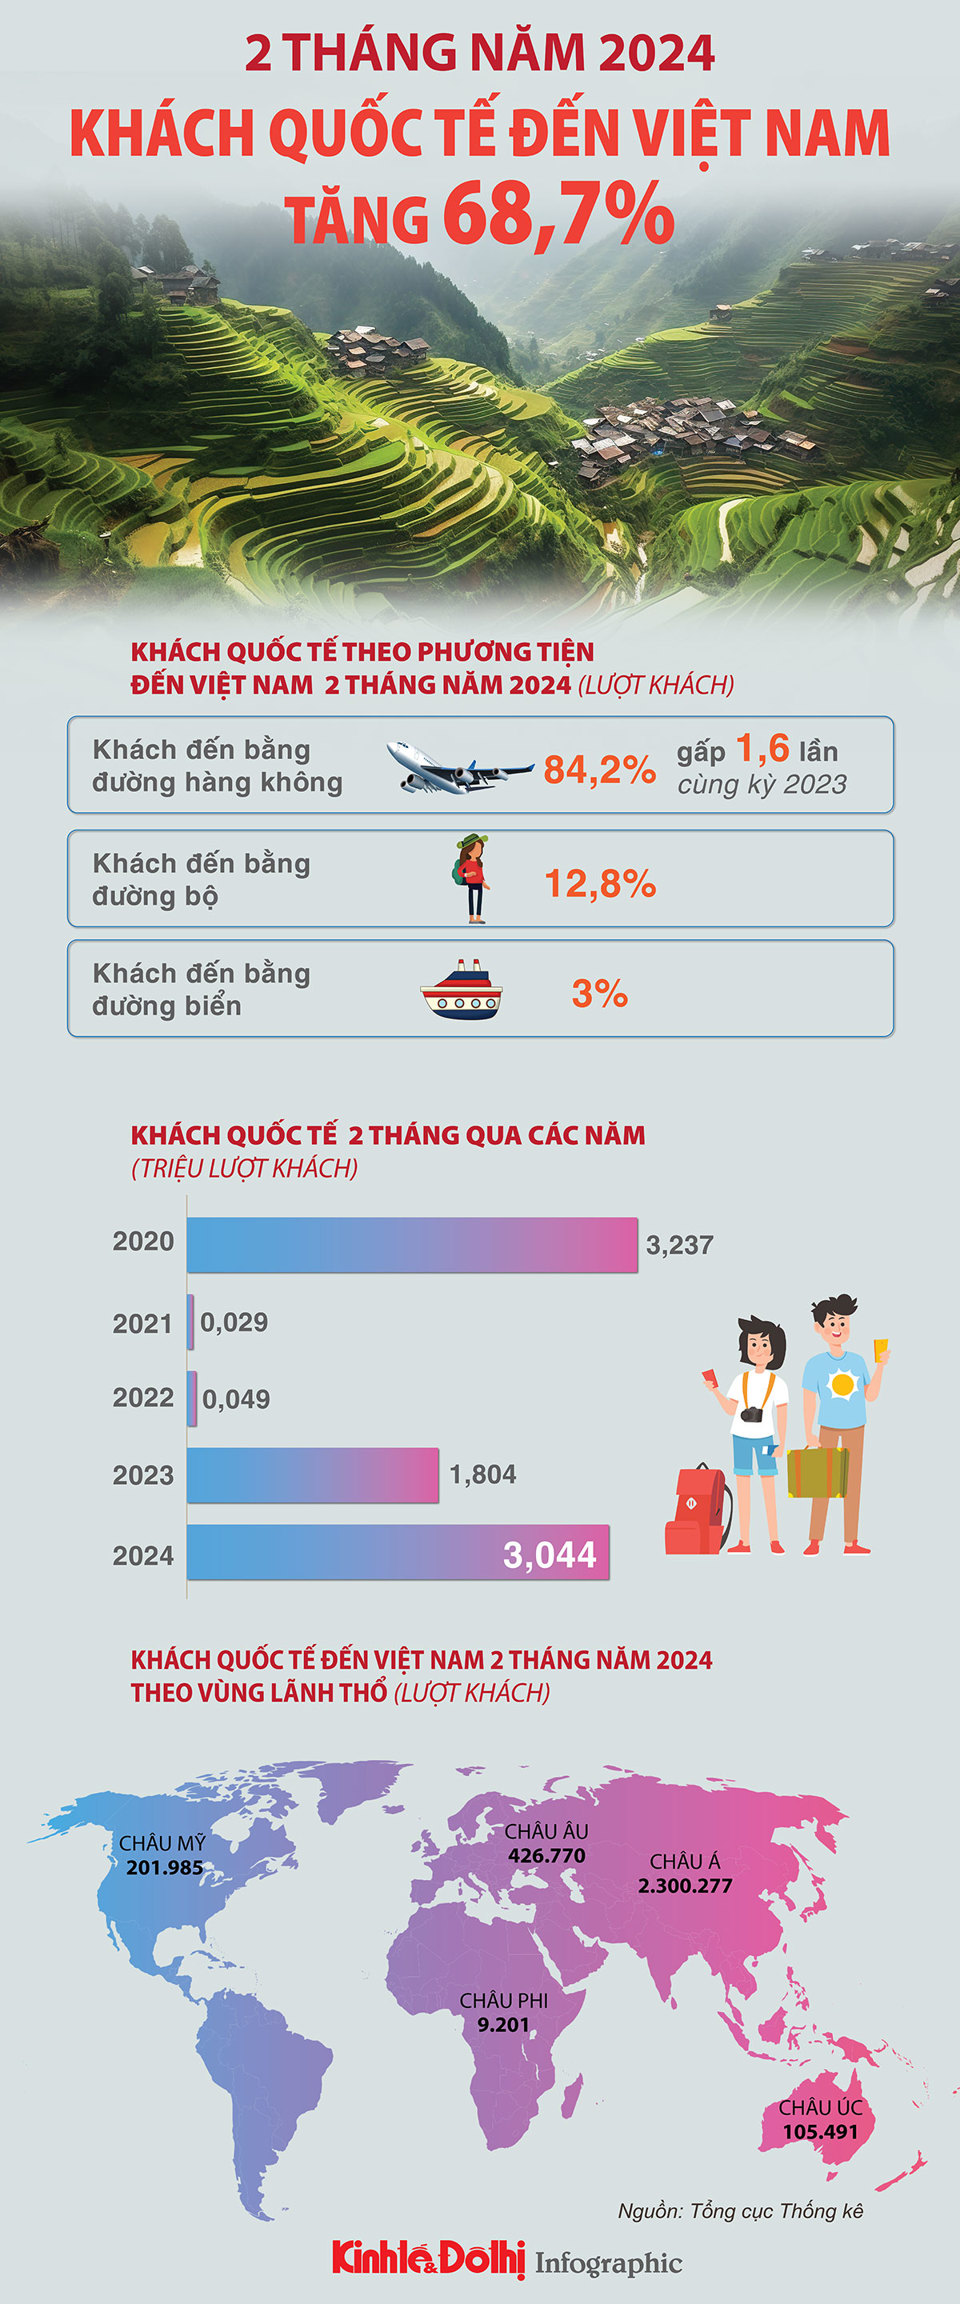 Việt Nam đón hơn 3 triệu lượt khách quốc tế trong 2 tháng đầu năm 2024 - Ảnh 1